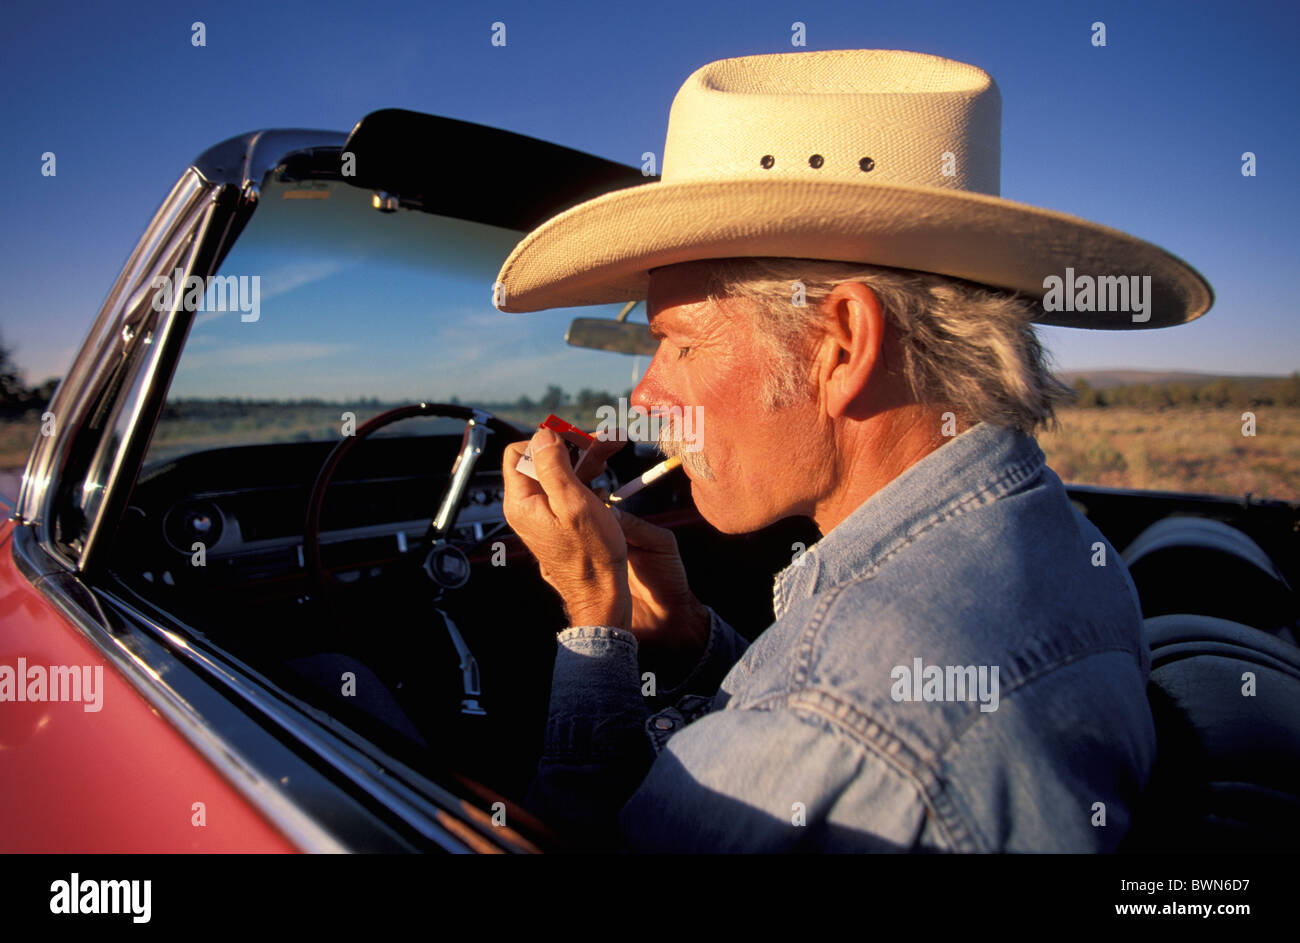 USA America Stati Uniti nord america Cowboy illuminazione Oregon Sigaretta fumare sigarette cappello da cowboy cabri Foto Stock